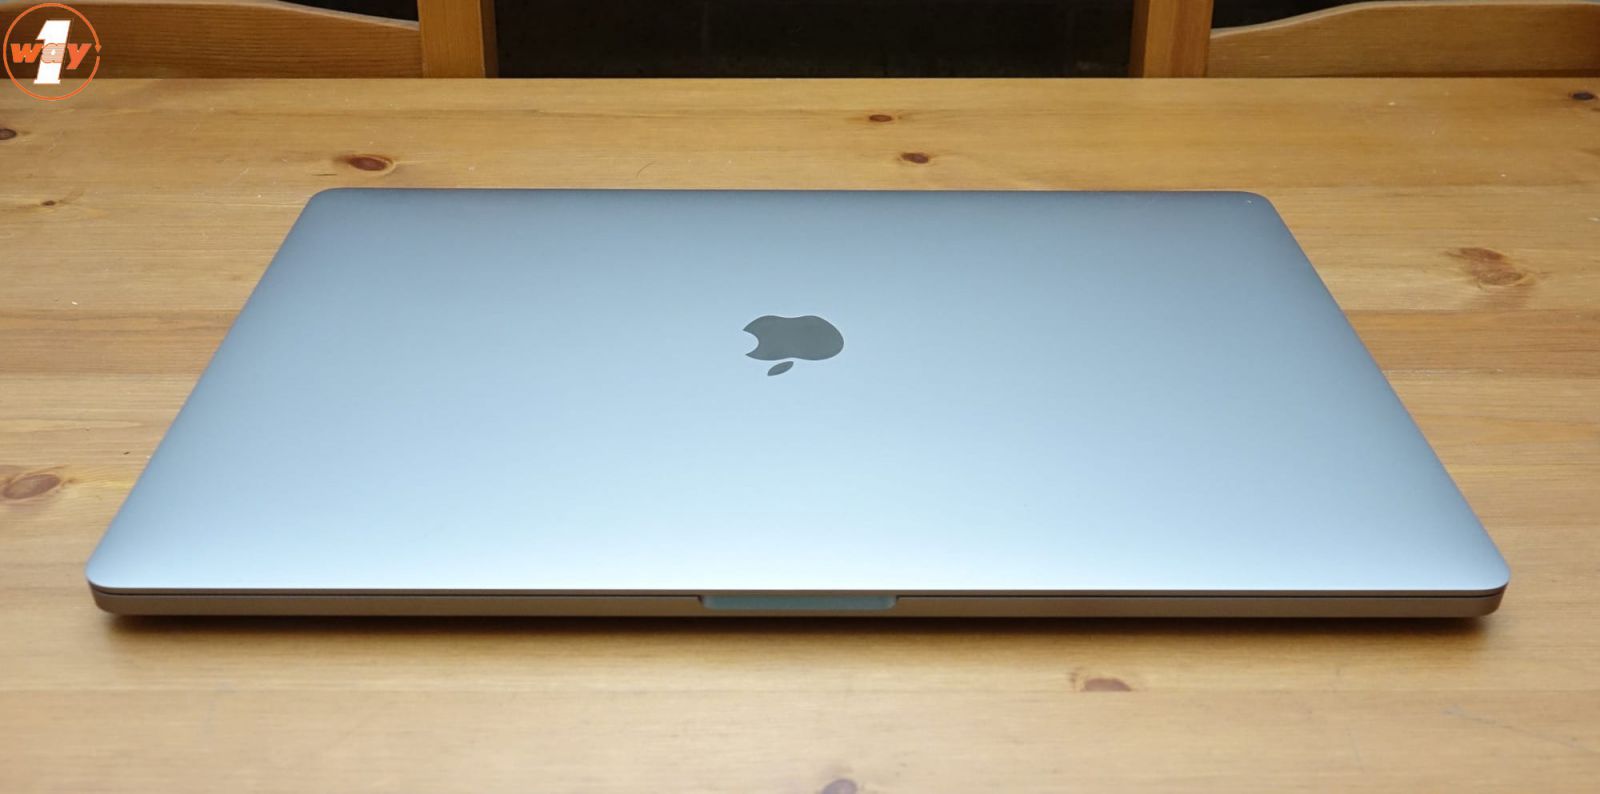 MacBook Pro 2019 16 inch tuy sở hữu thiết kế đẹp nhưng khả năng di động không cao